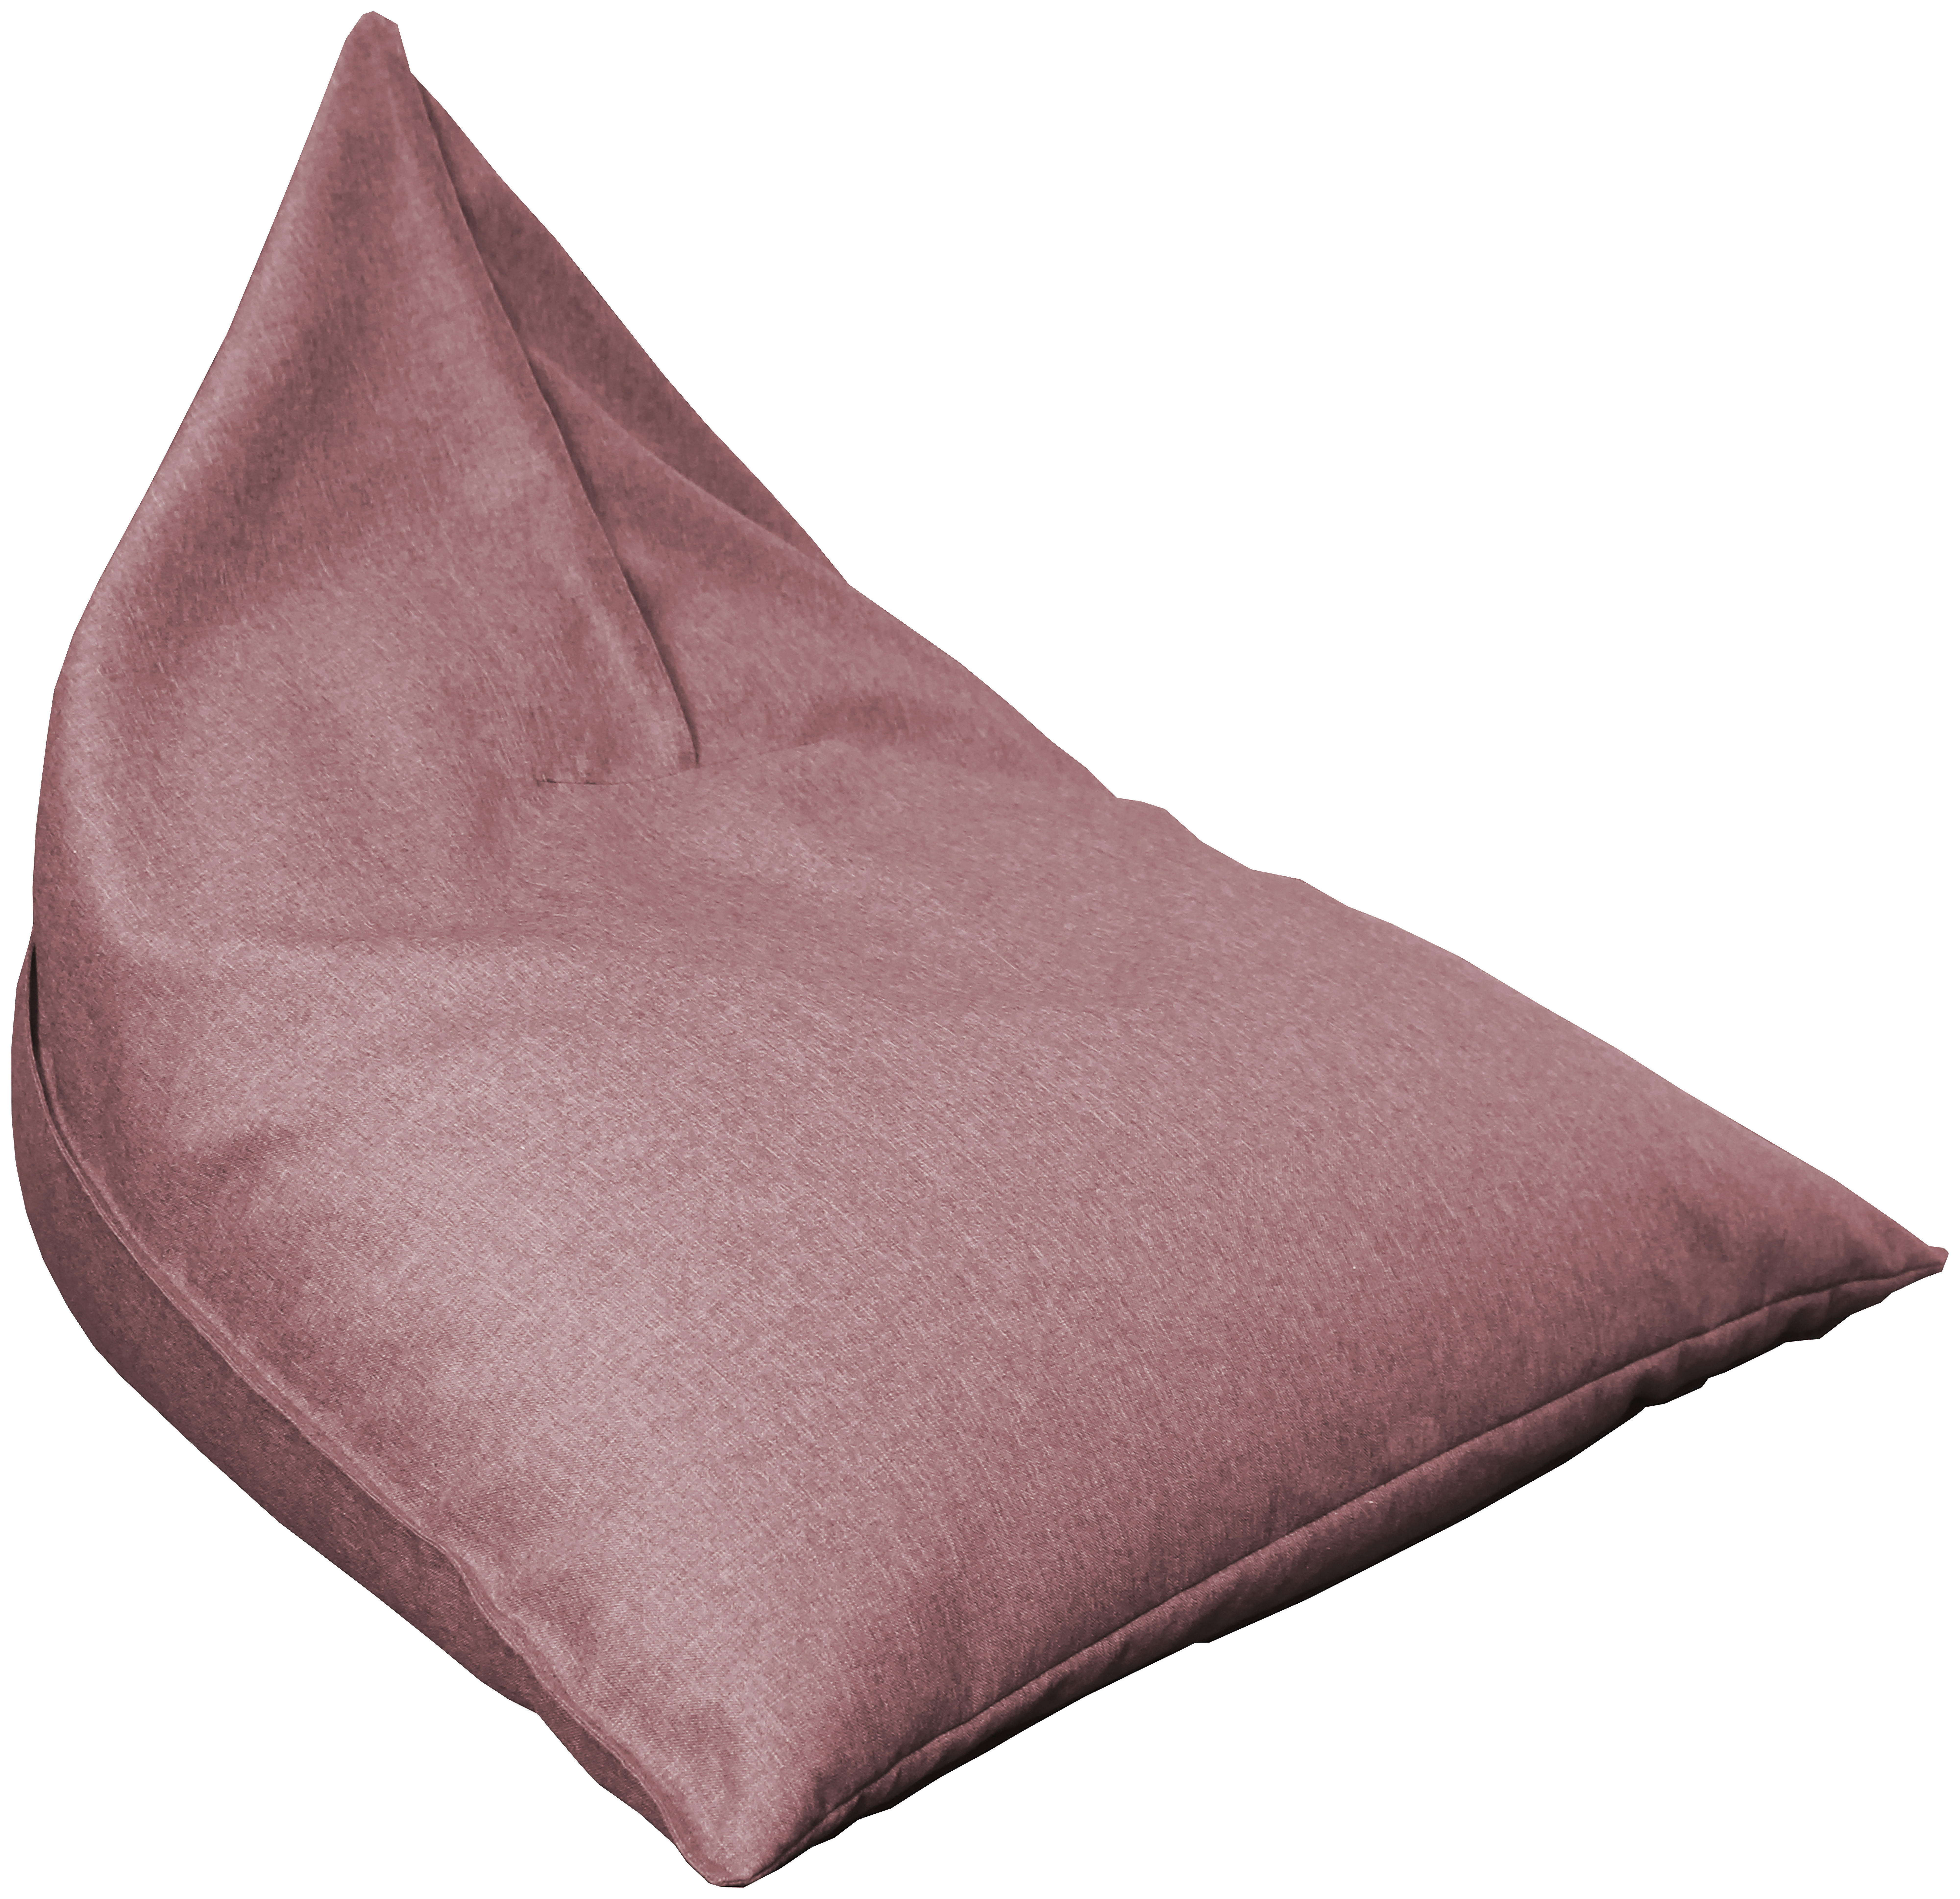 SEDACÍ PYTEL, růžová - růžová, Design, textil (110/85/130cm) - Carryhome